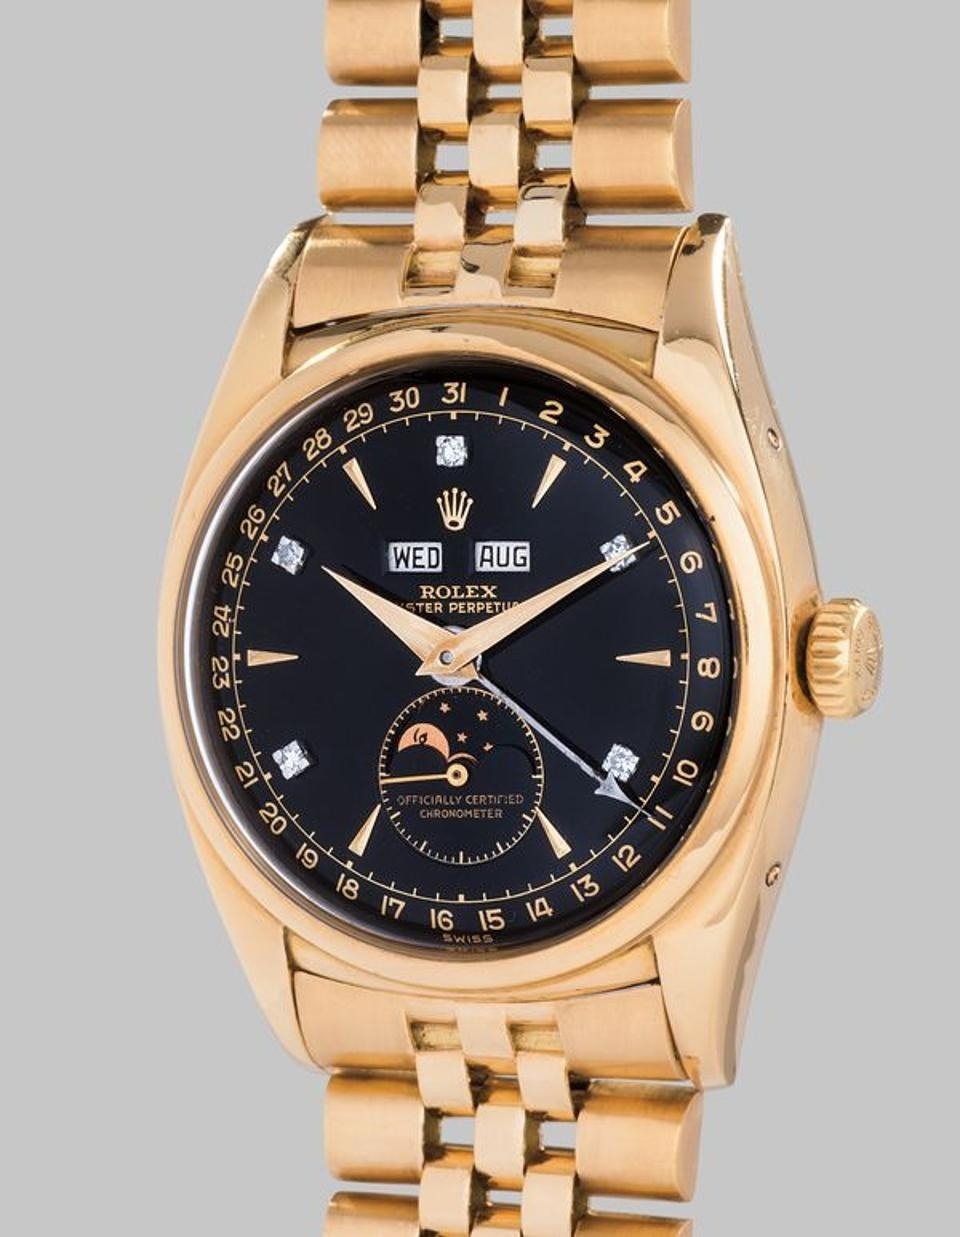 Đồng hồ Rolex Reference 6062 từng thuộc về vua Bảo Đại. Ảnh: TL